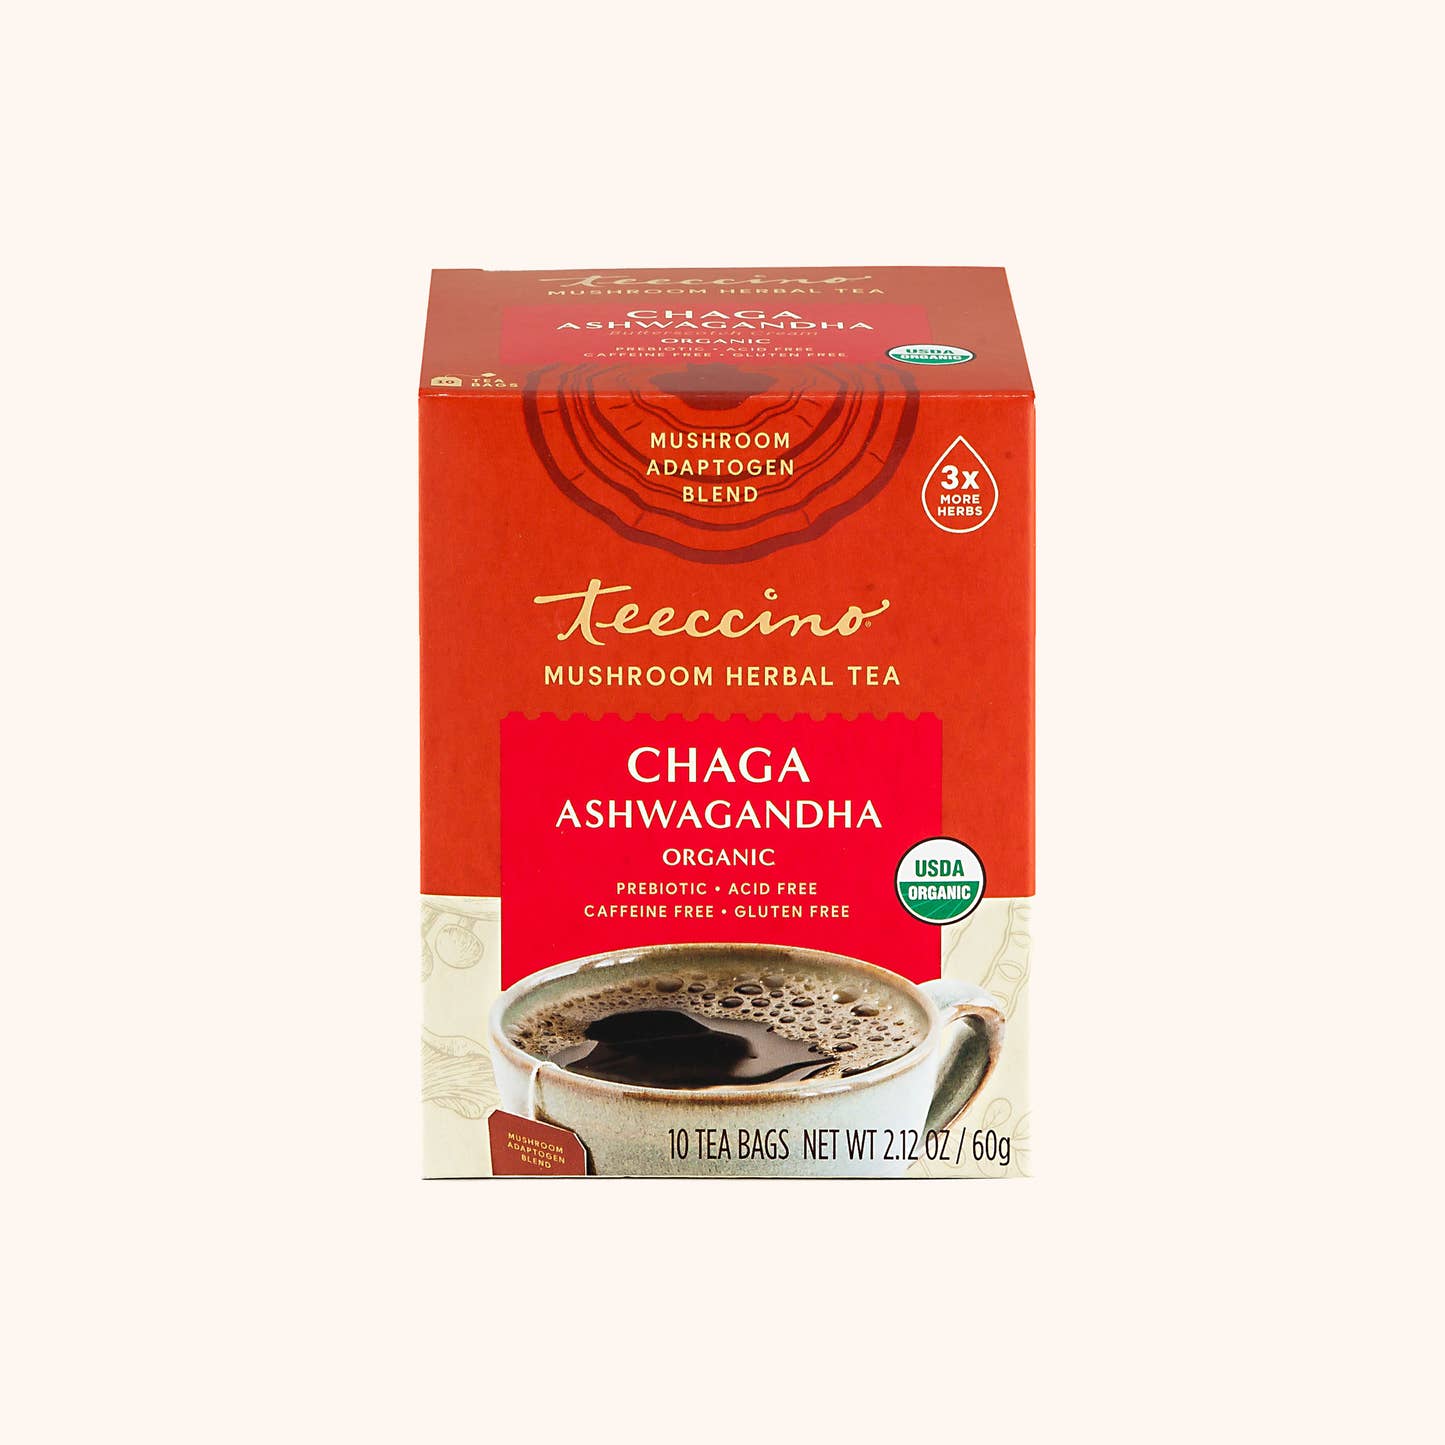 Chaga Ashwagandha Mushroom Adaptogen Herbal Tea